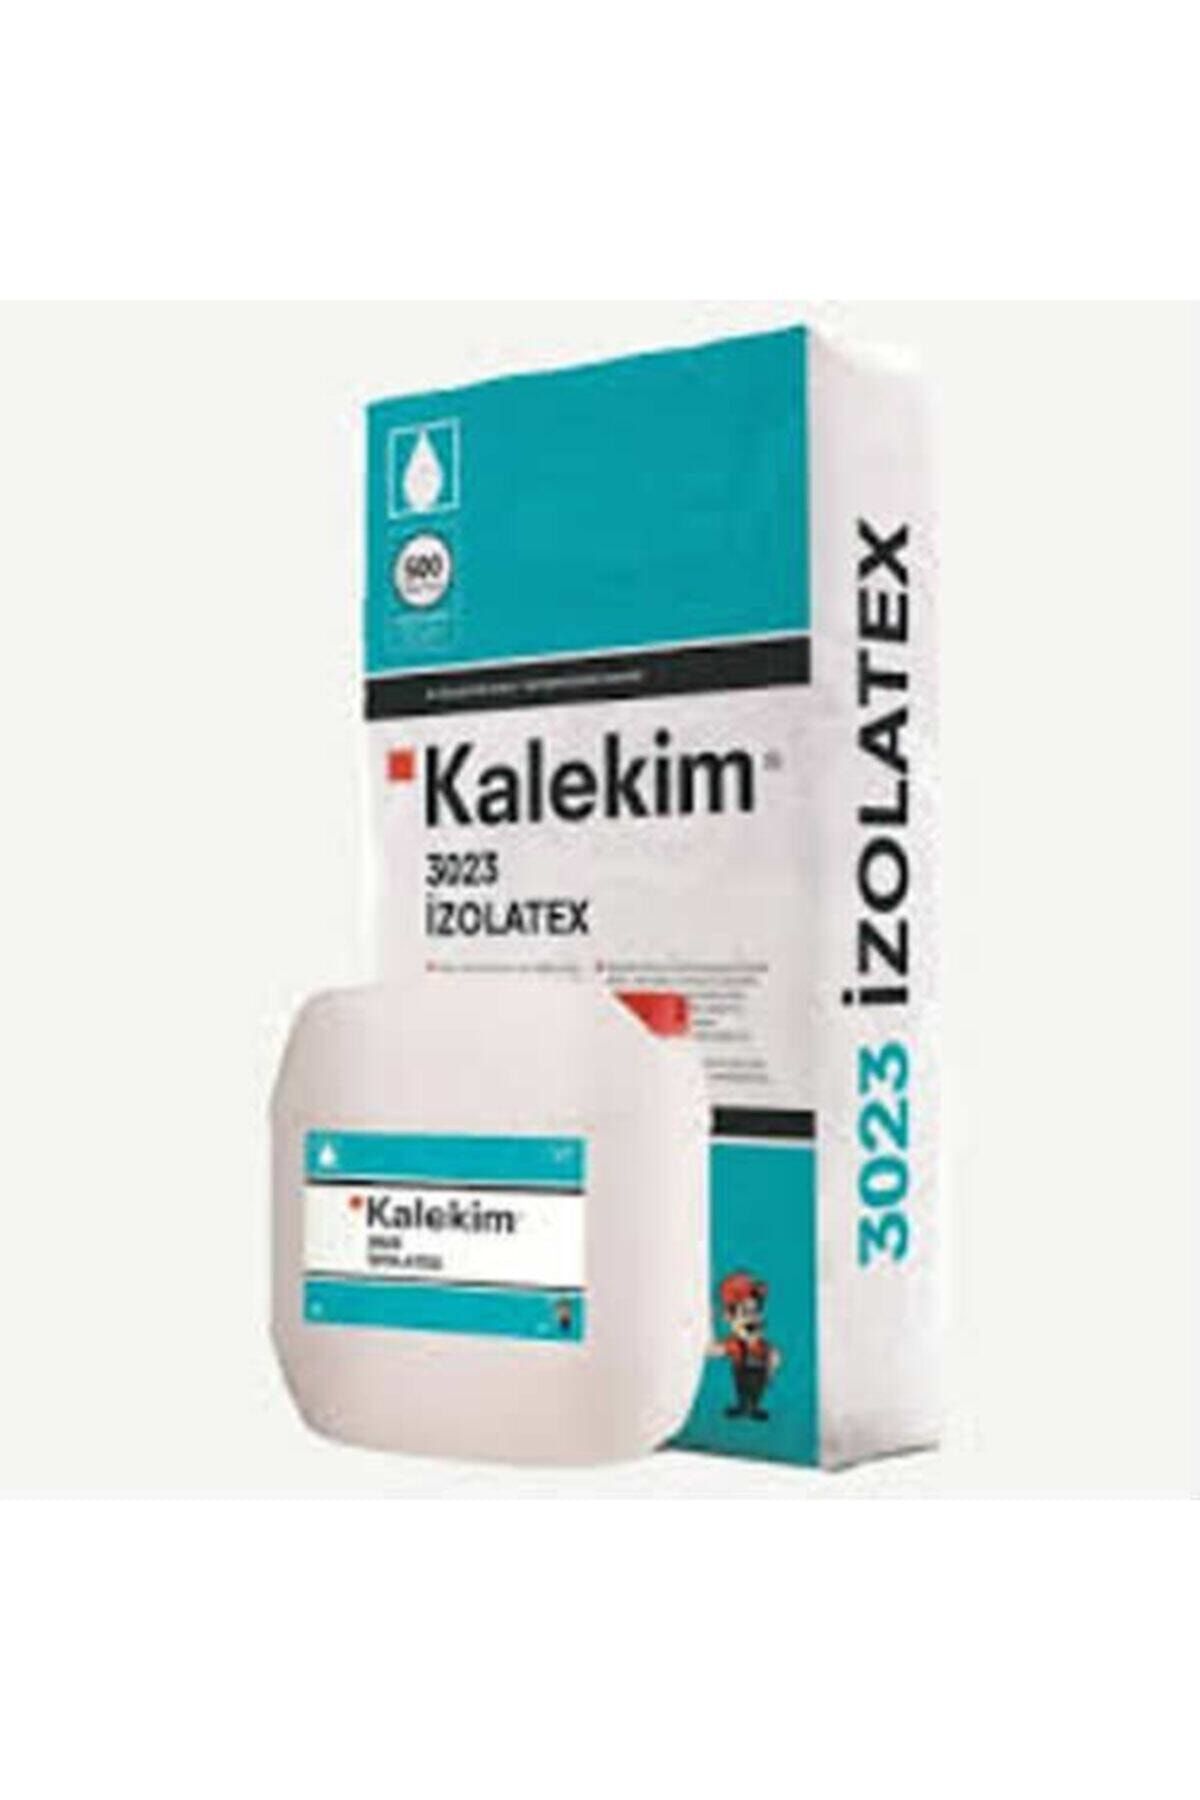 Kalekim Izolatex 3023 Sıvı Ve Toz 25 Kg